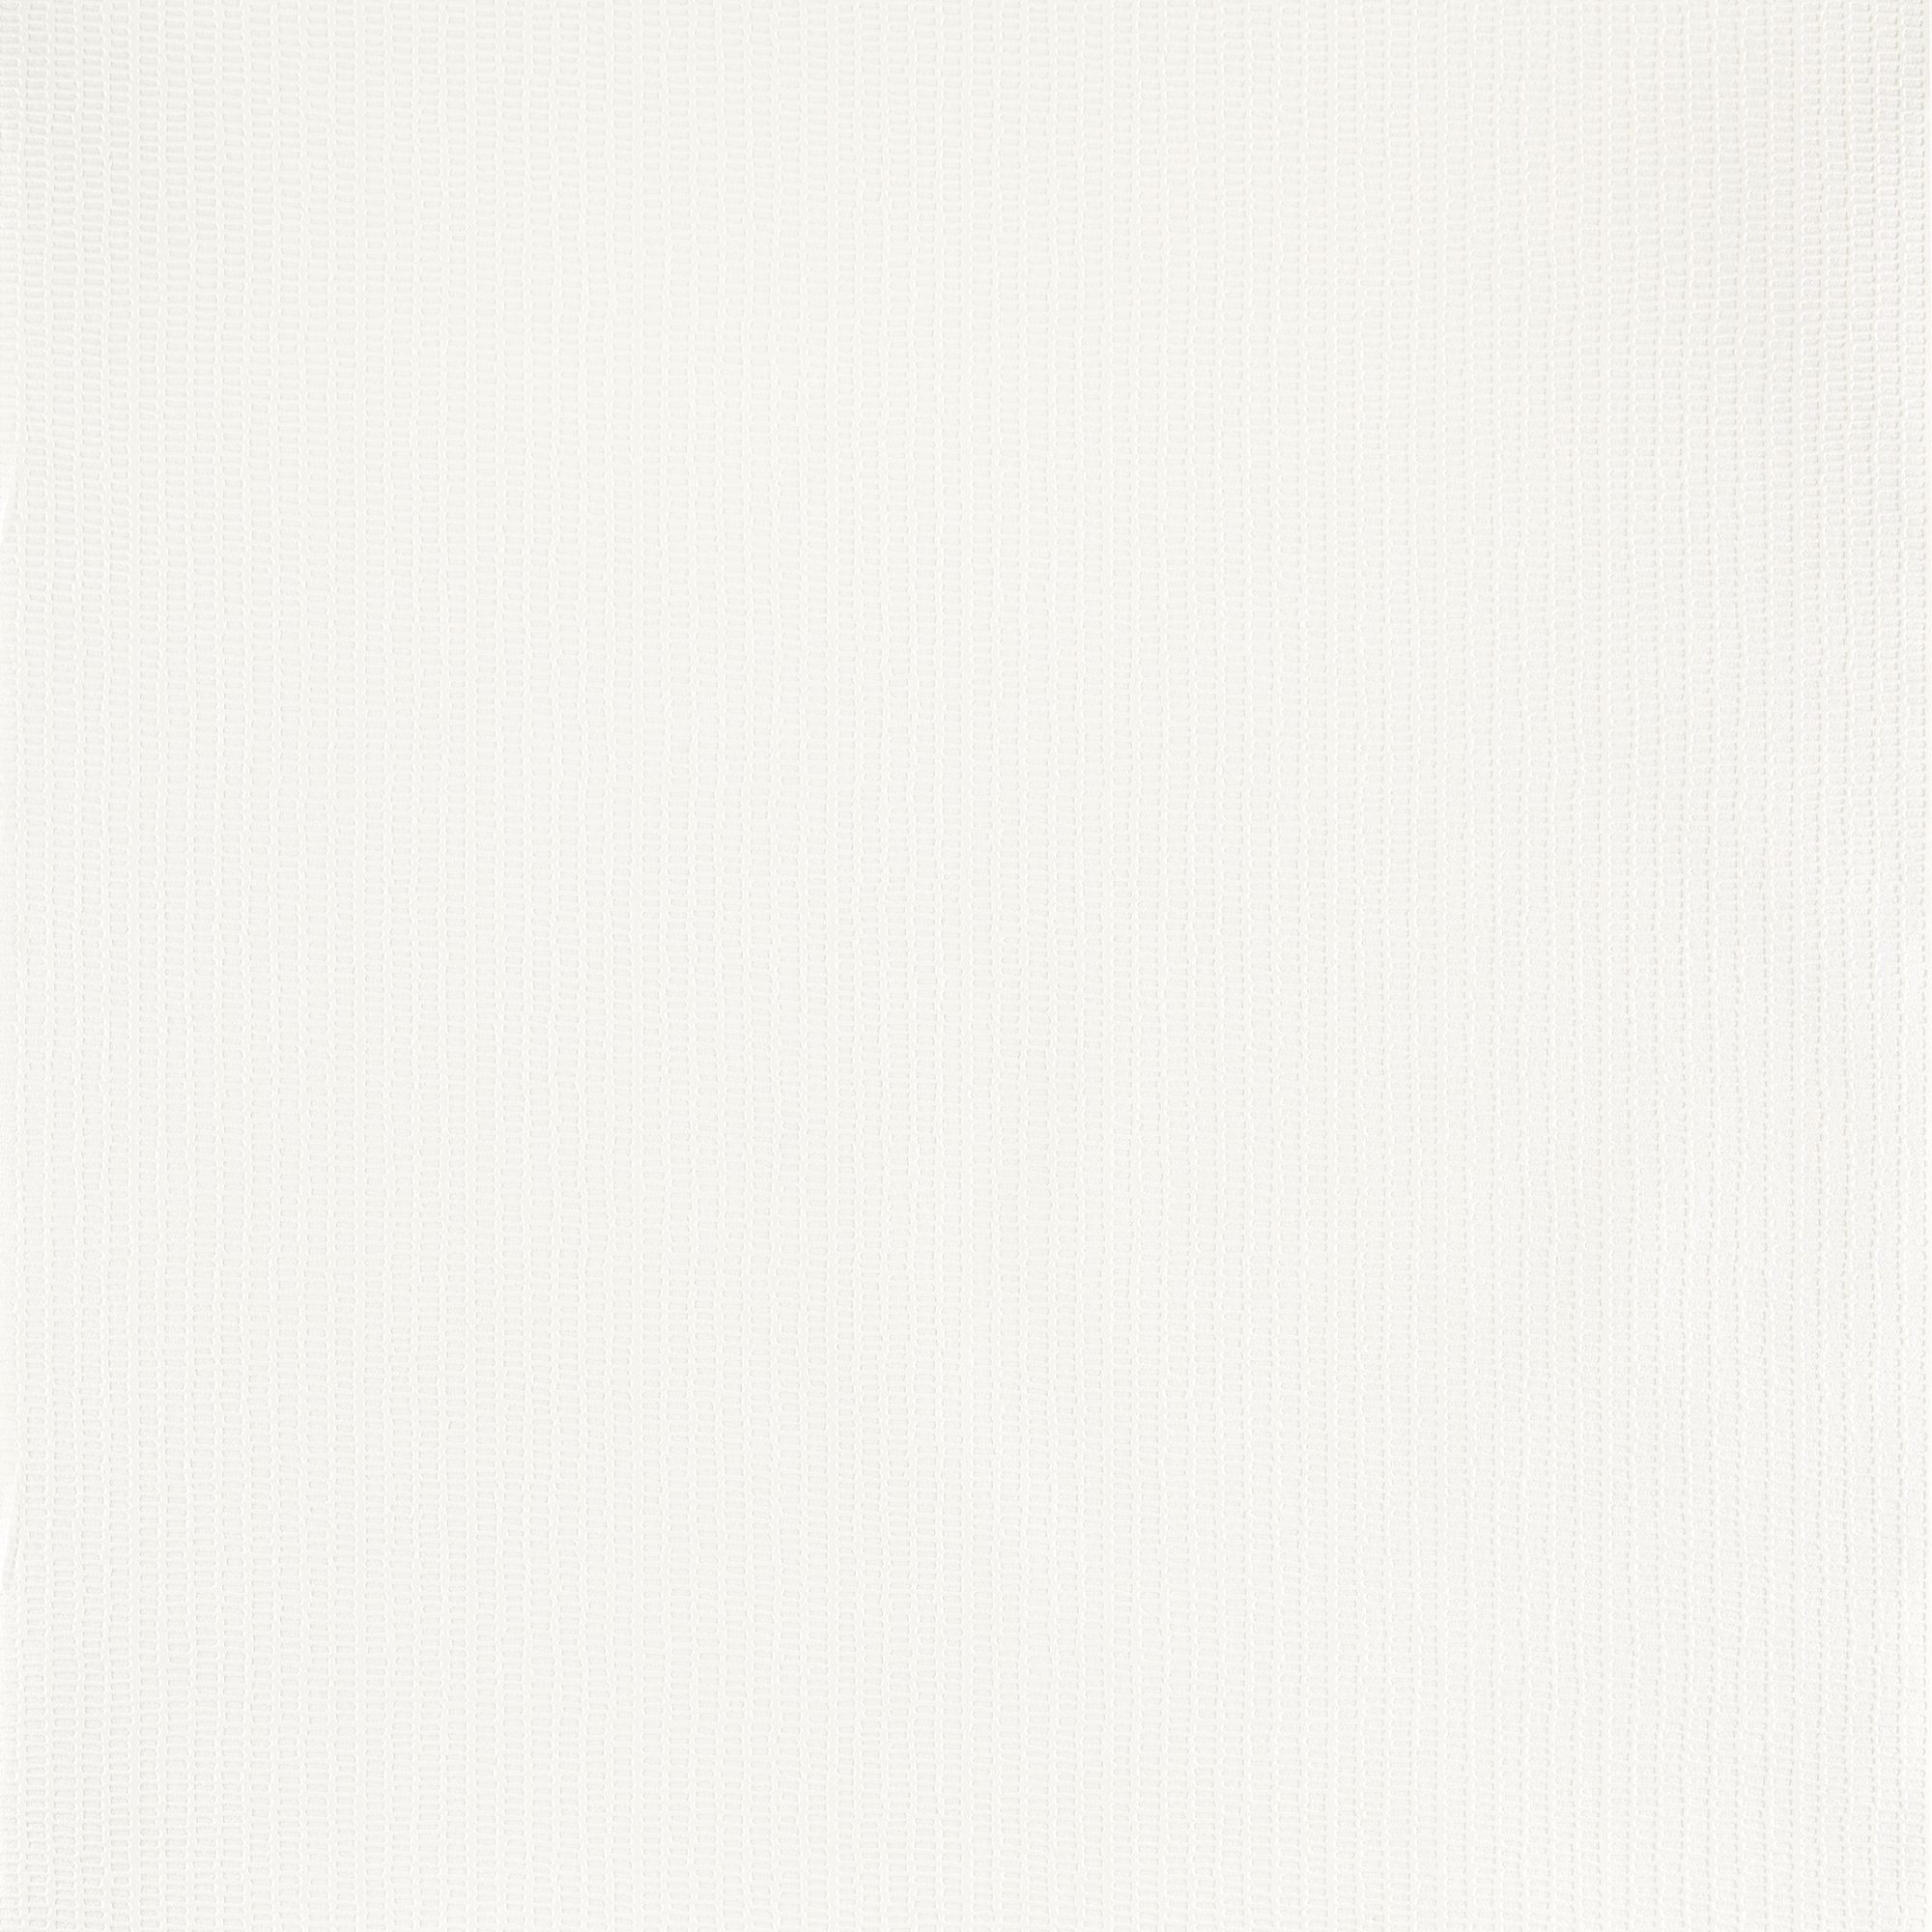 Vliestapete 'Schöner Wohnen' Uni weiß 10,05 x 0,53 cm + product picture